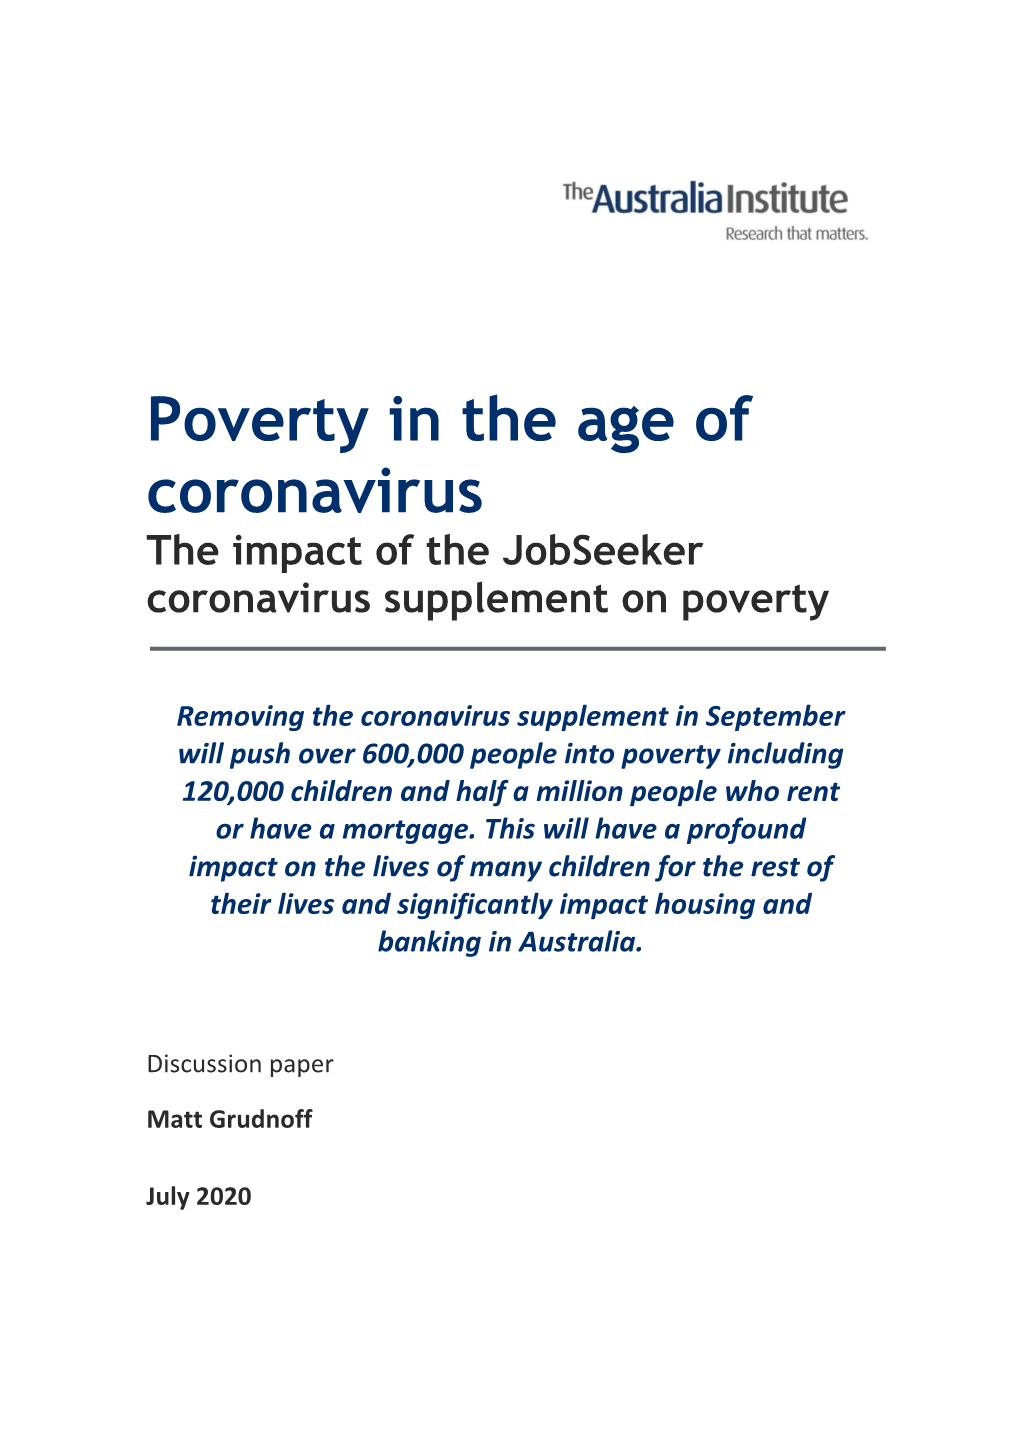 Poverty in the Age of Coronavirus the Impact of the Jobseeker Coronavirus Supplement on Poverty